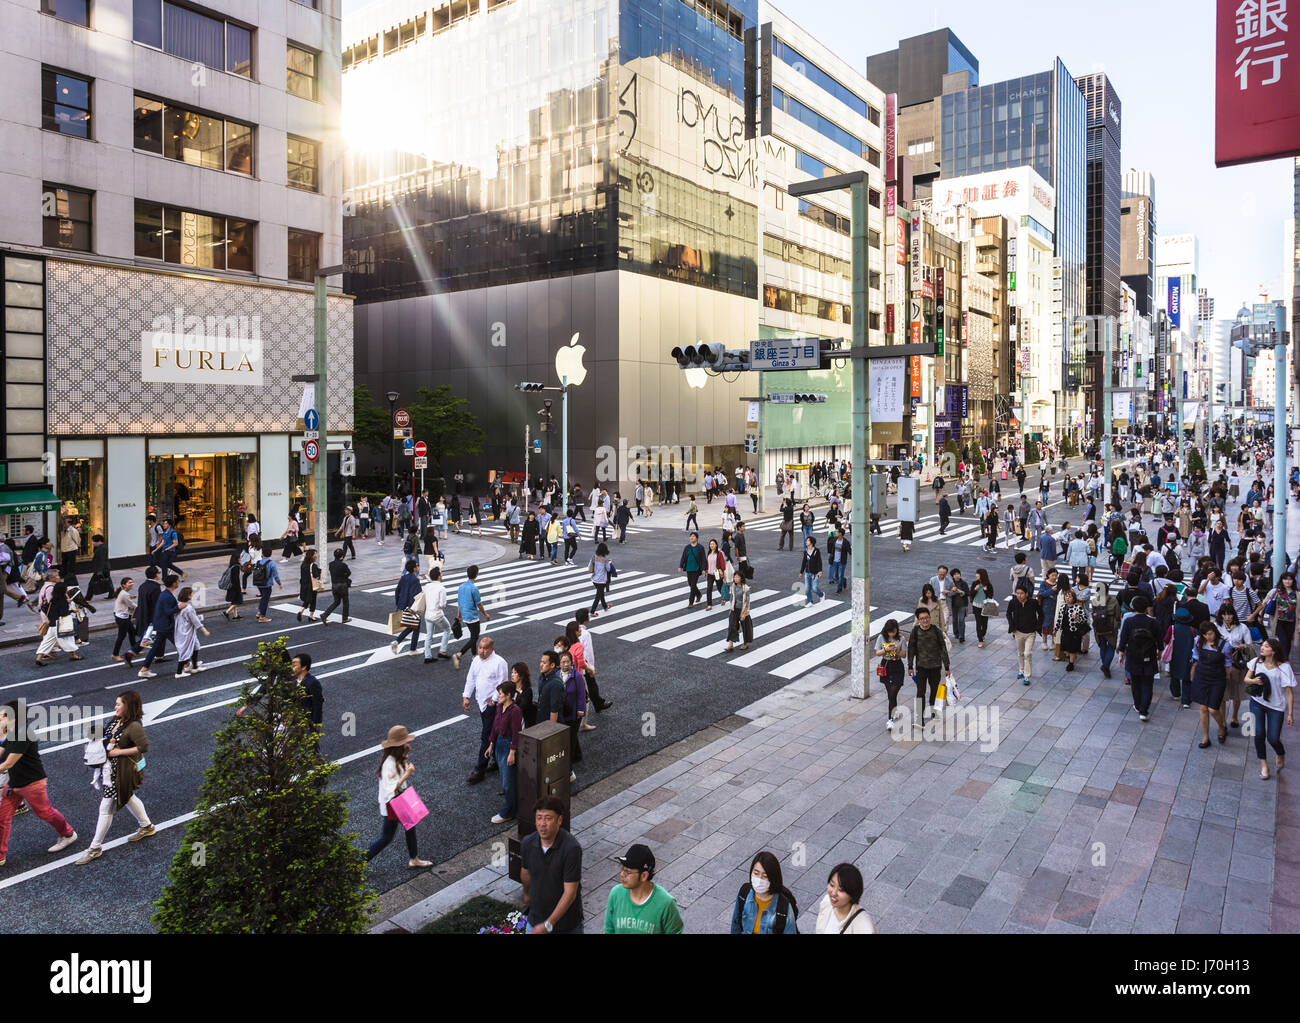 Tokio - 7. Mai 2017: Menschen wandern durch die Straßen von Ginza, das luxuriöse Einkaufsviertel in der Hauptstadt Tokio, wo Verkehr Bann ist Stockfoto